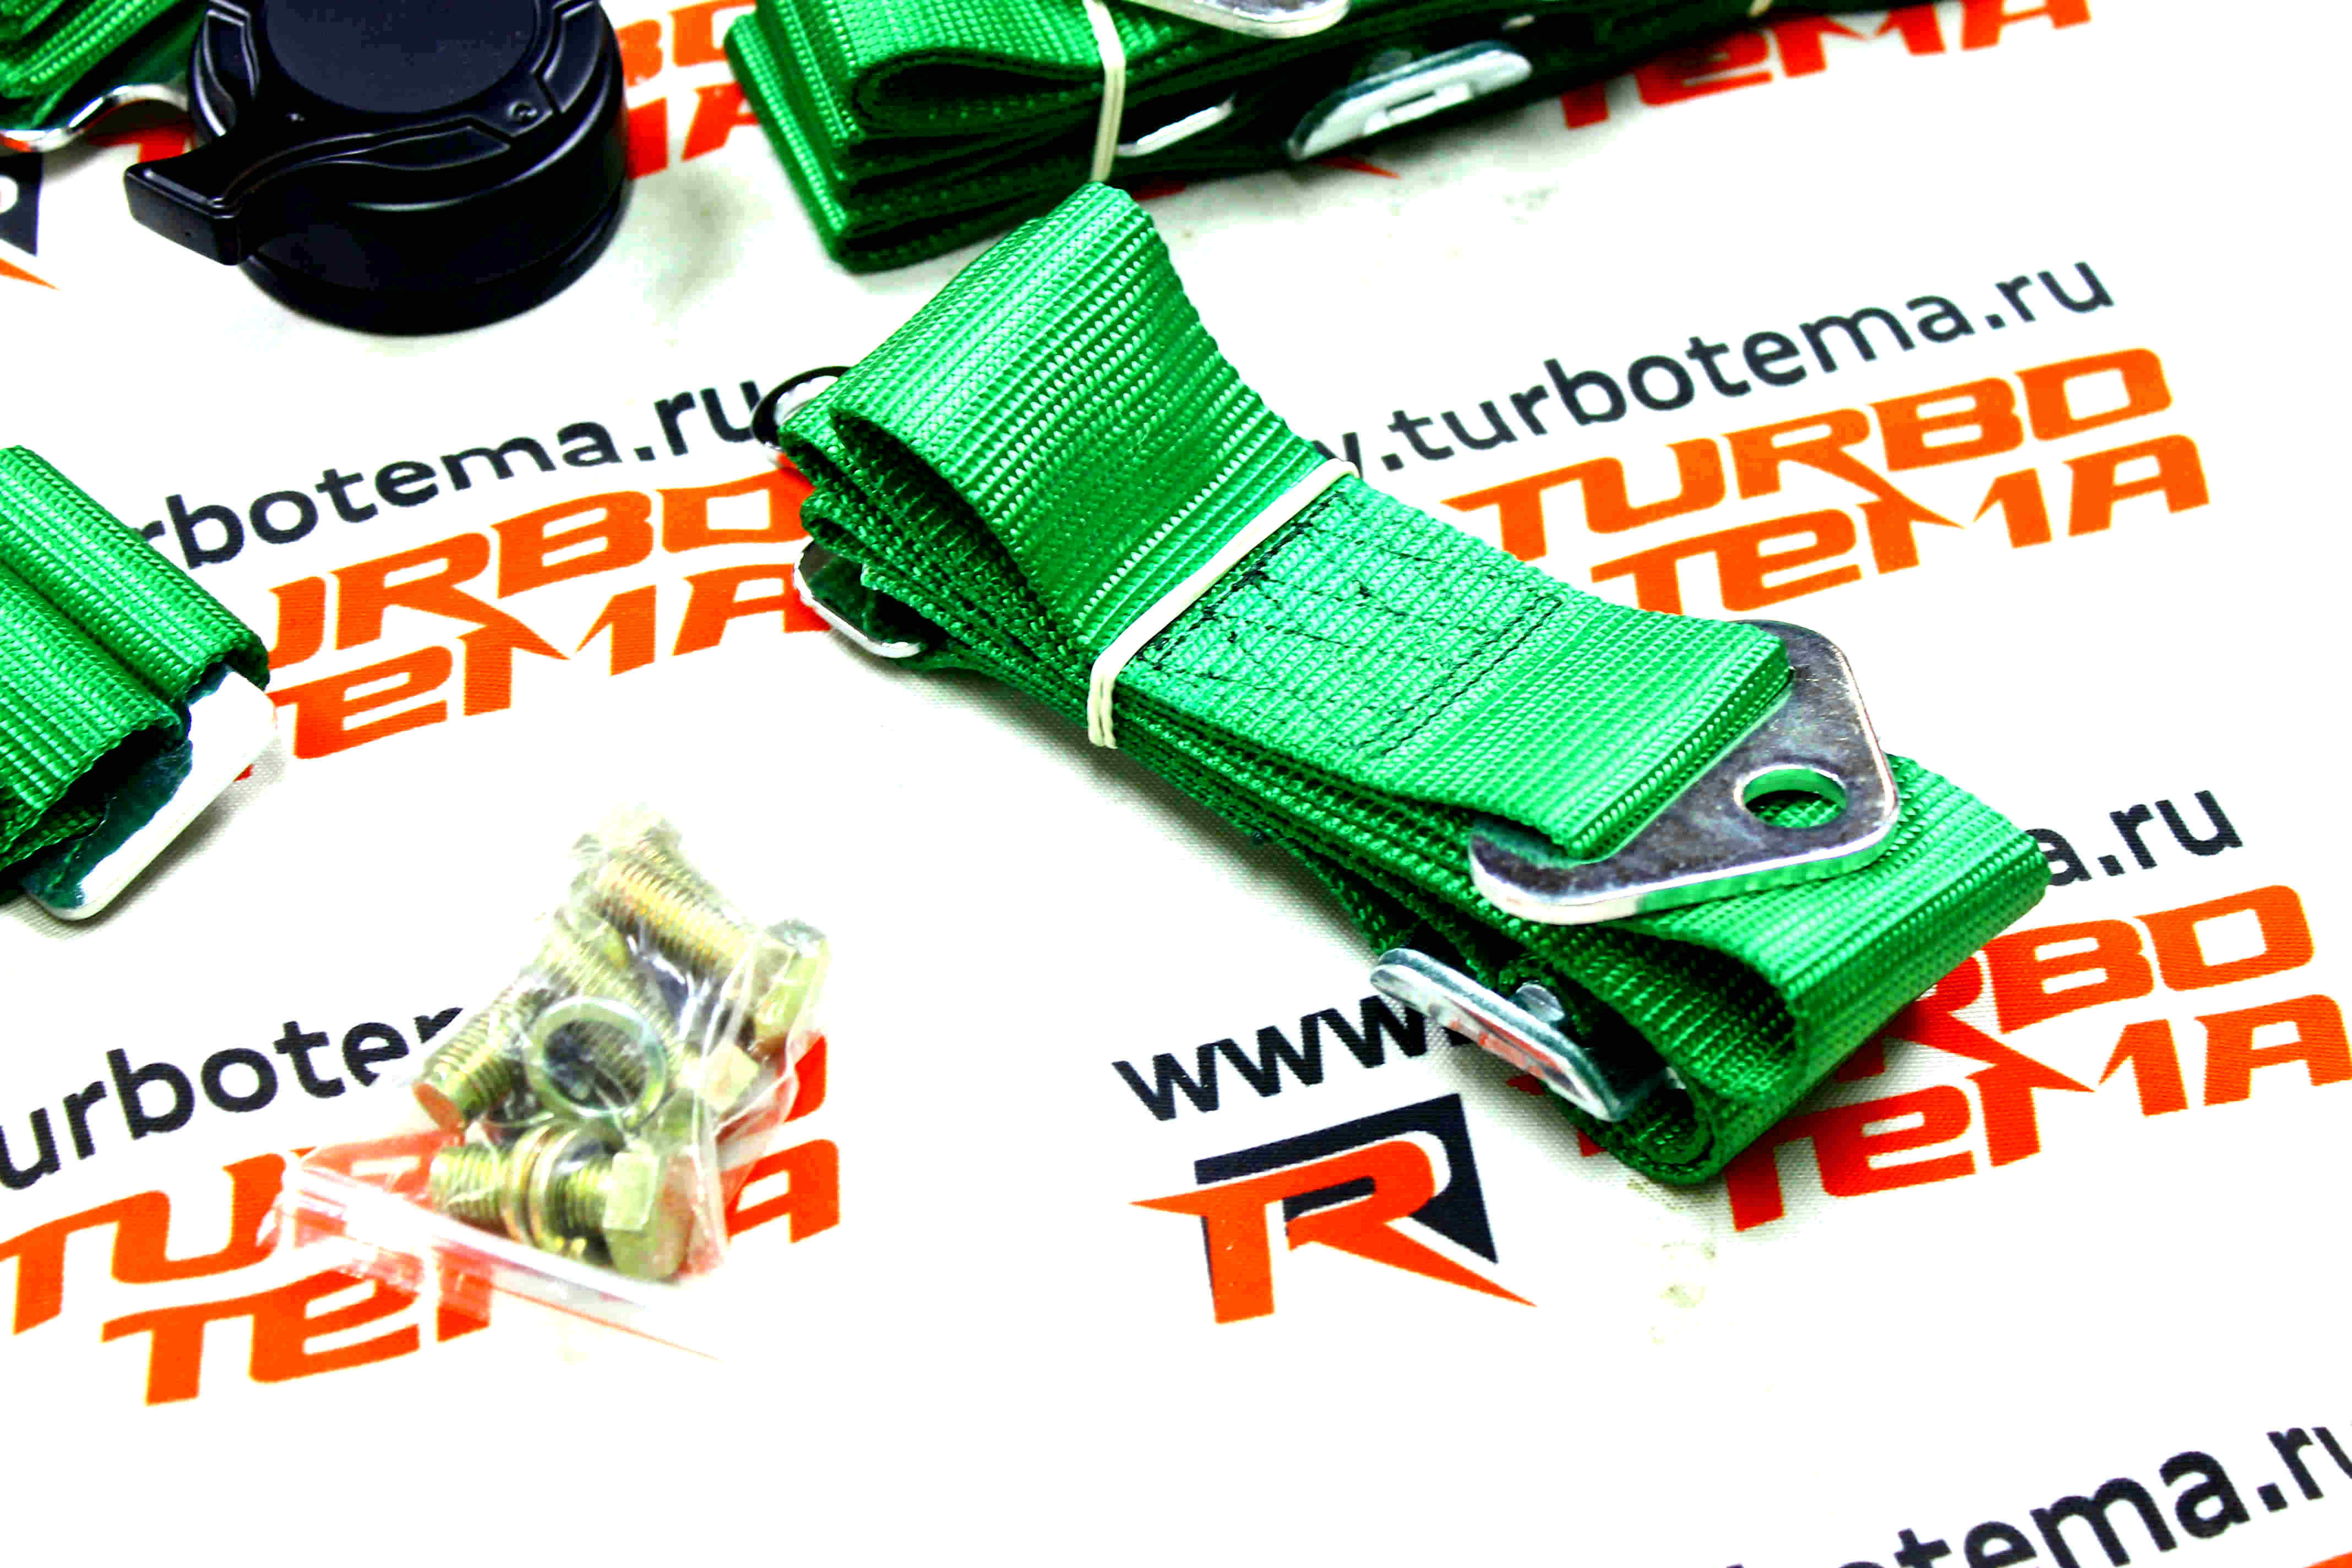 Ремни безопасности "TURBOTEMA" 5-ти точечные, 2" ширина, быстросъемные (зеленые) JBR4001-5. Фото �5